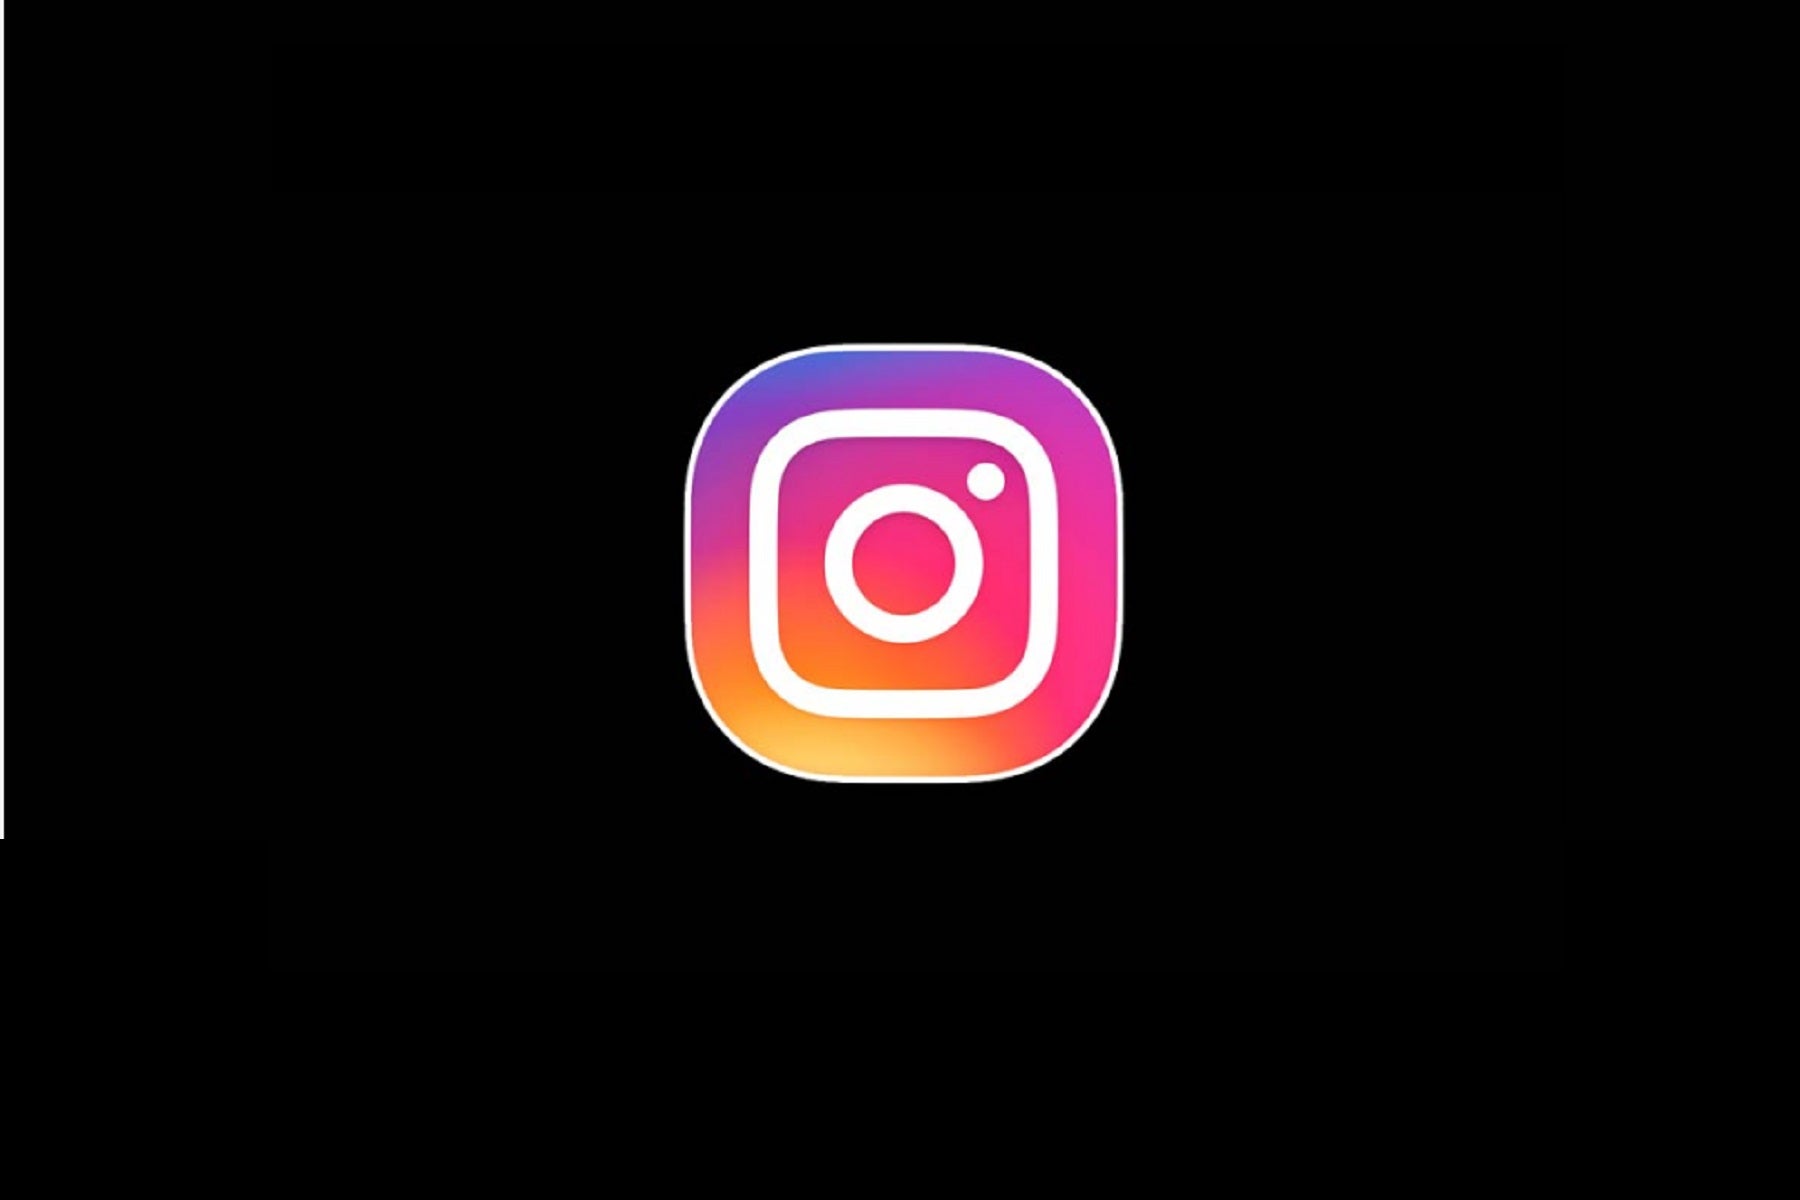 Jadi, Anda dapat mengaktifkan mode gelap di Instagram